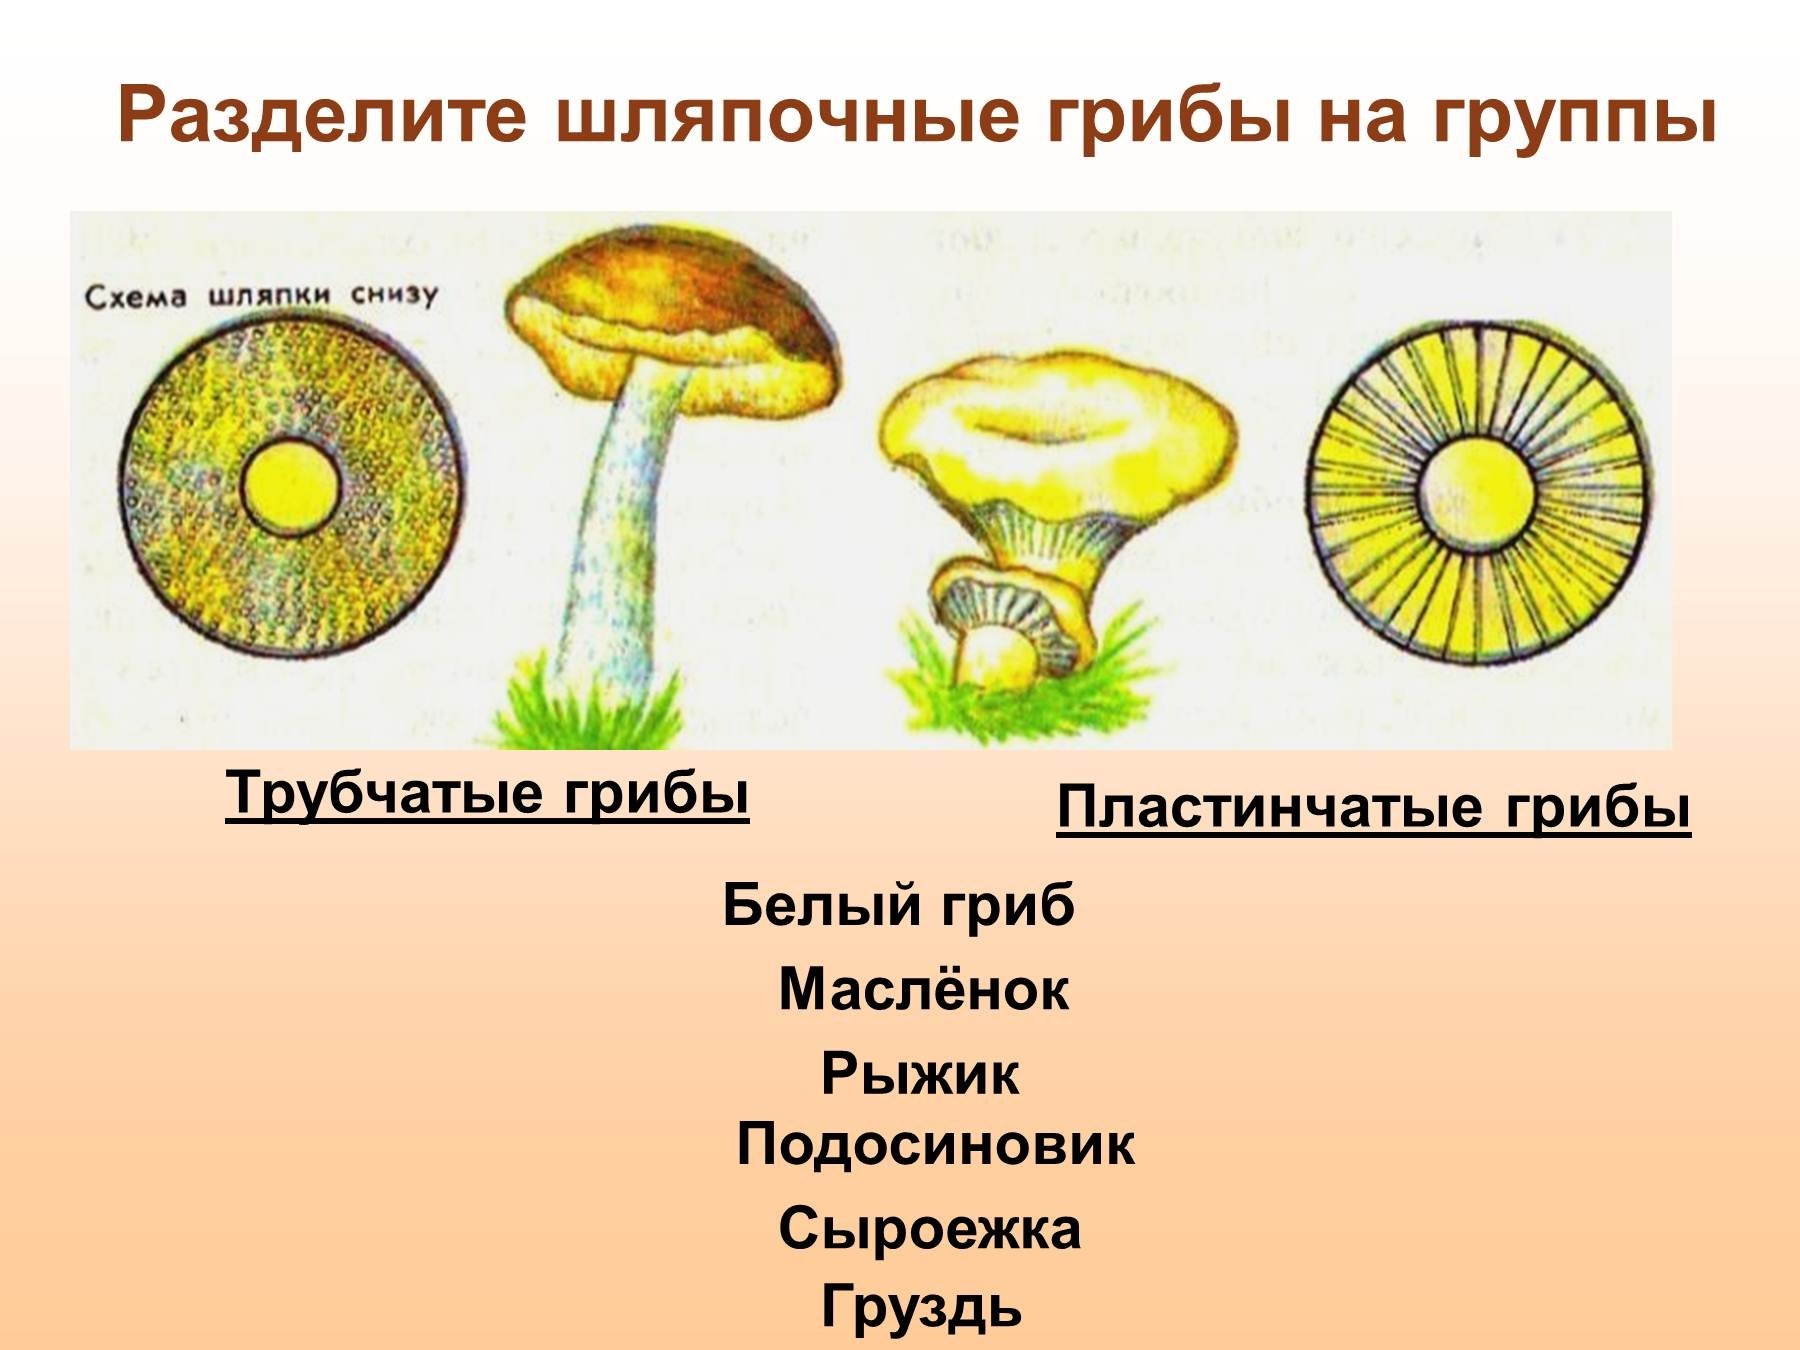 Чем трубчатые грибы отличаются от пластинчатых. Шляпочные грибы трубчатые и пластинчатые. Трубчатые Шляпочные грибы Рыжик. Трубчатые и пластинчатые грибы 5 класс биология. Трубчатые Шляпочные грибы масленок.